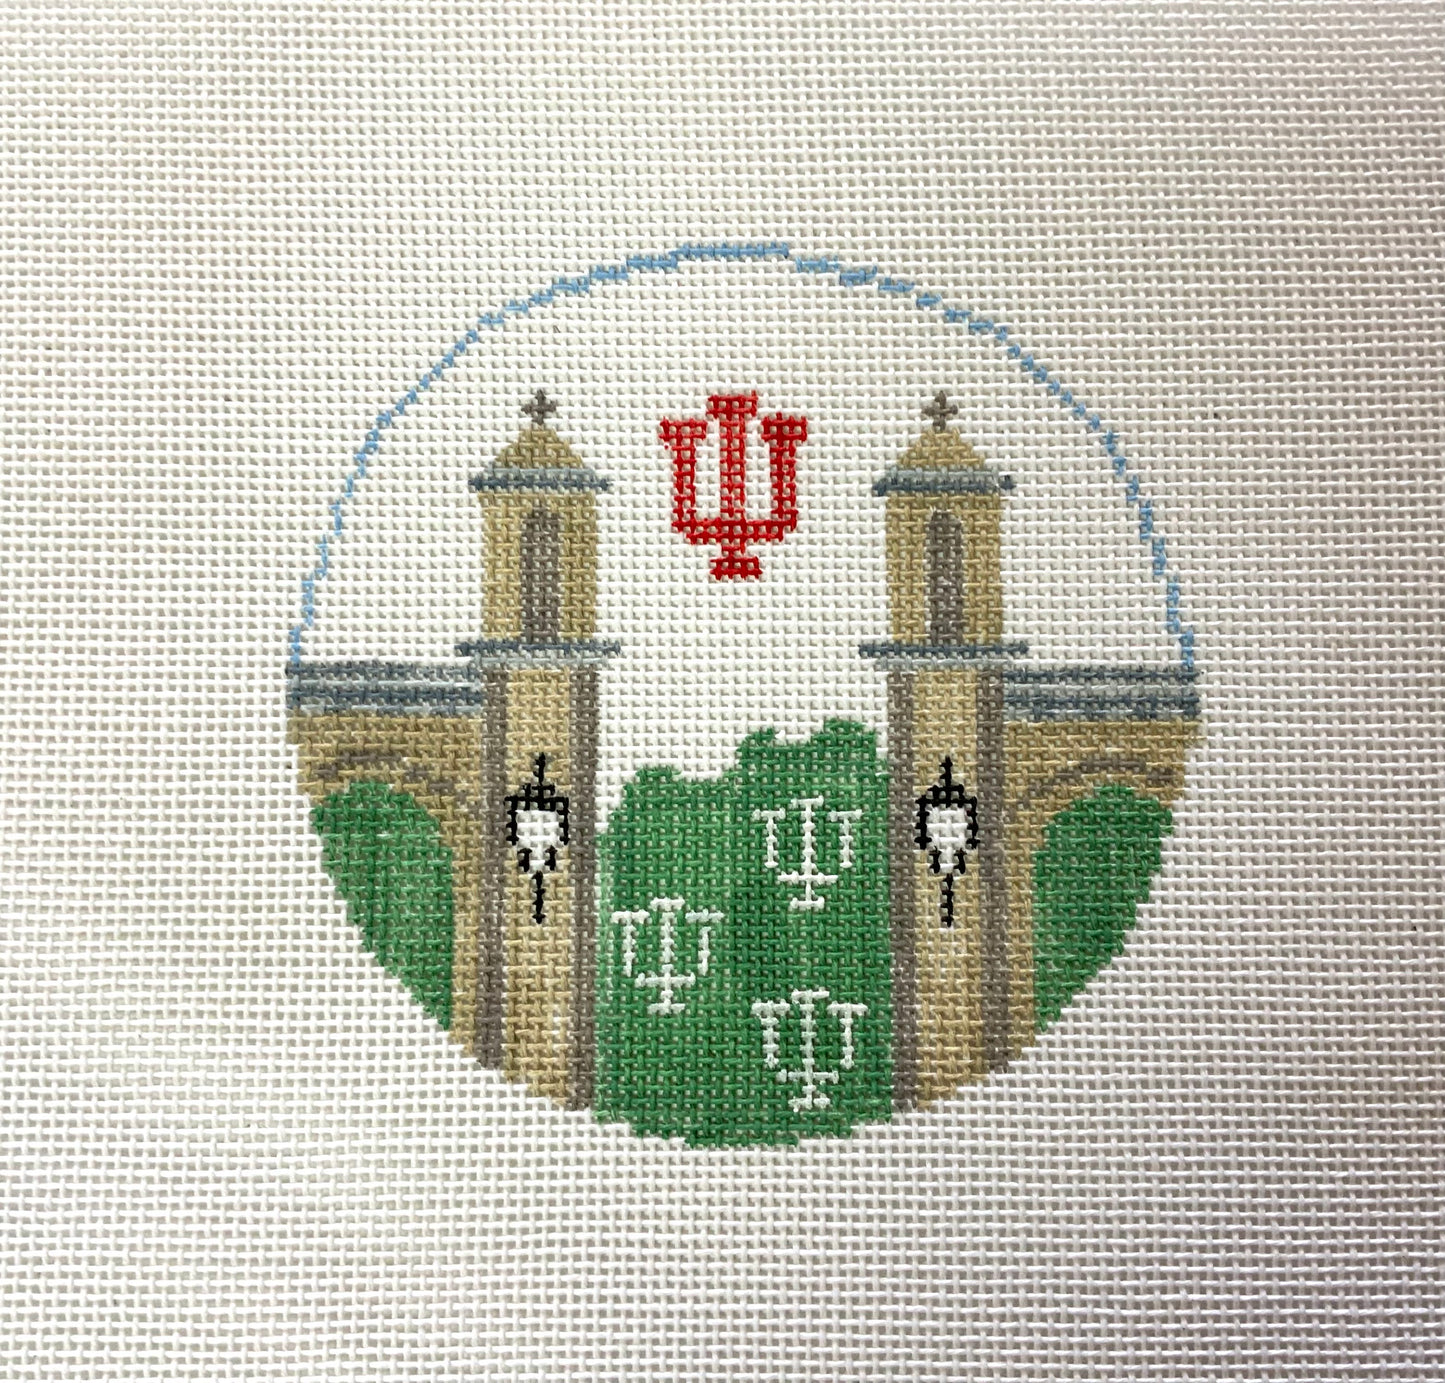 Round University of Indiana